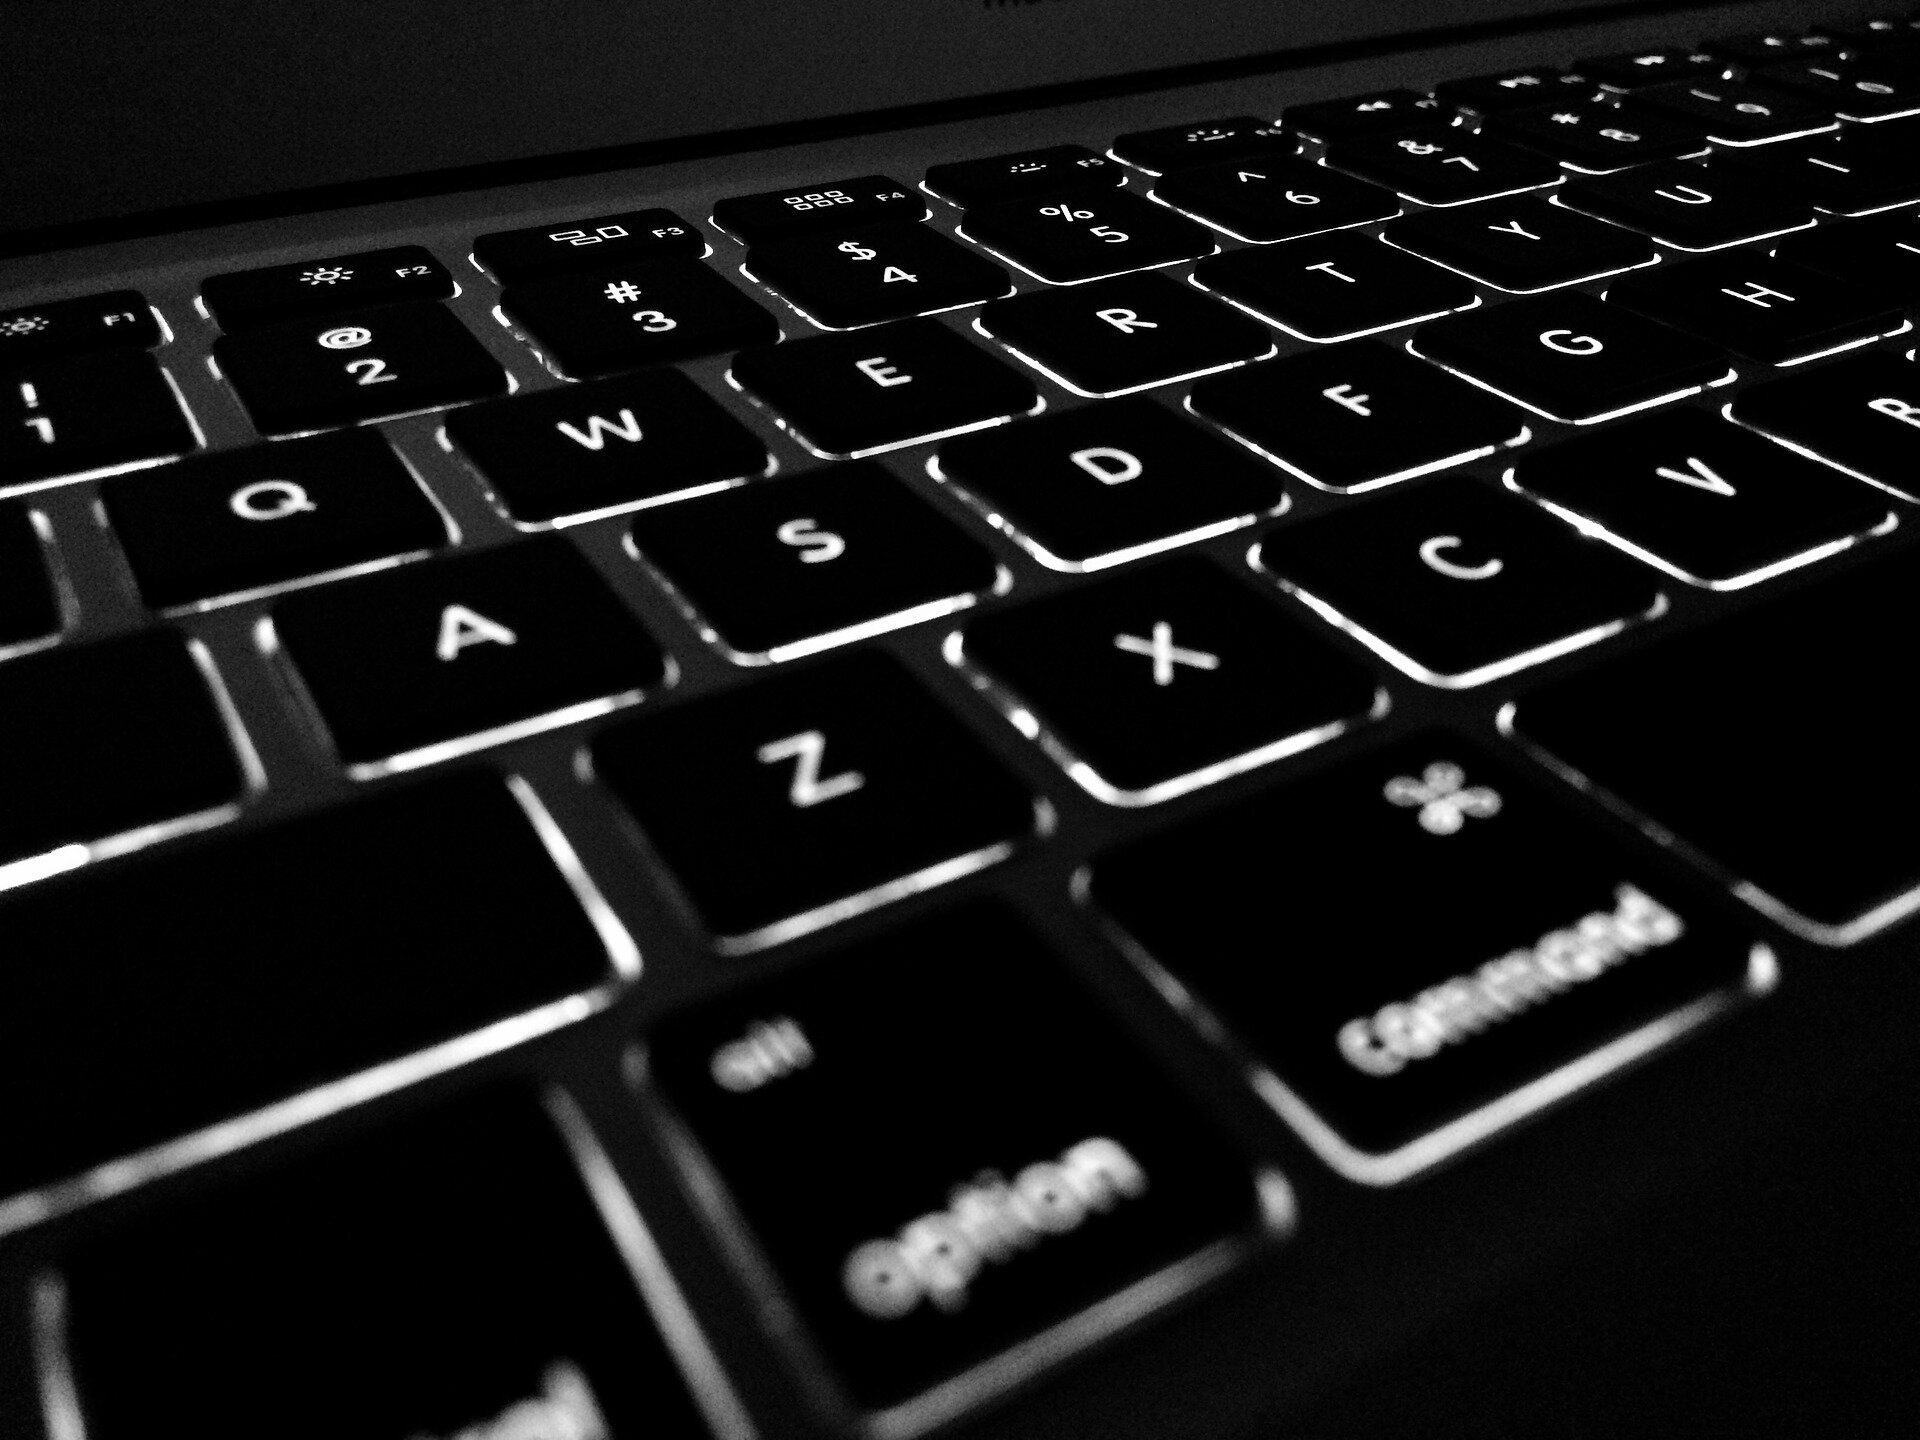 Black and white laptop keyboard